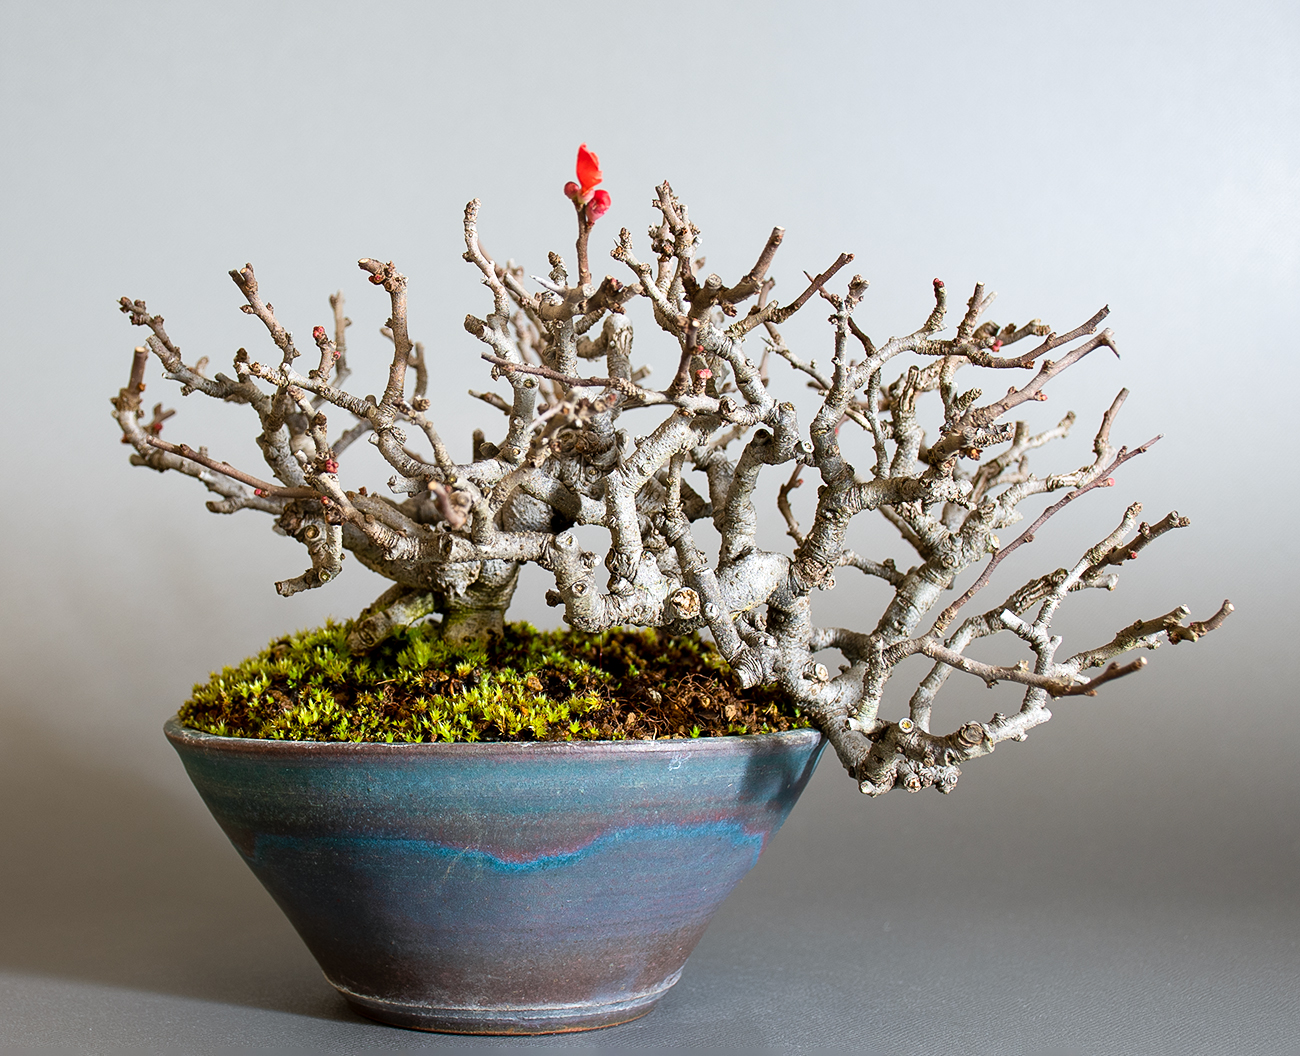 チョウジュバイ盆栽（ちょうじゅばい・長寿梅）ミニ盆栽の今と過去の成長記録と育て方・手入れ・剪定・植え替え・Chaenomeles speciosa 'Chojubai' bonsai photo